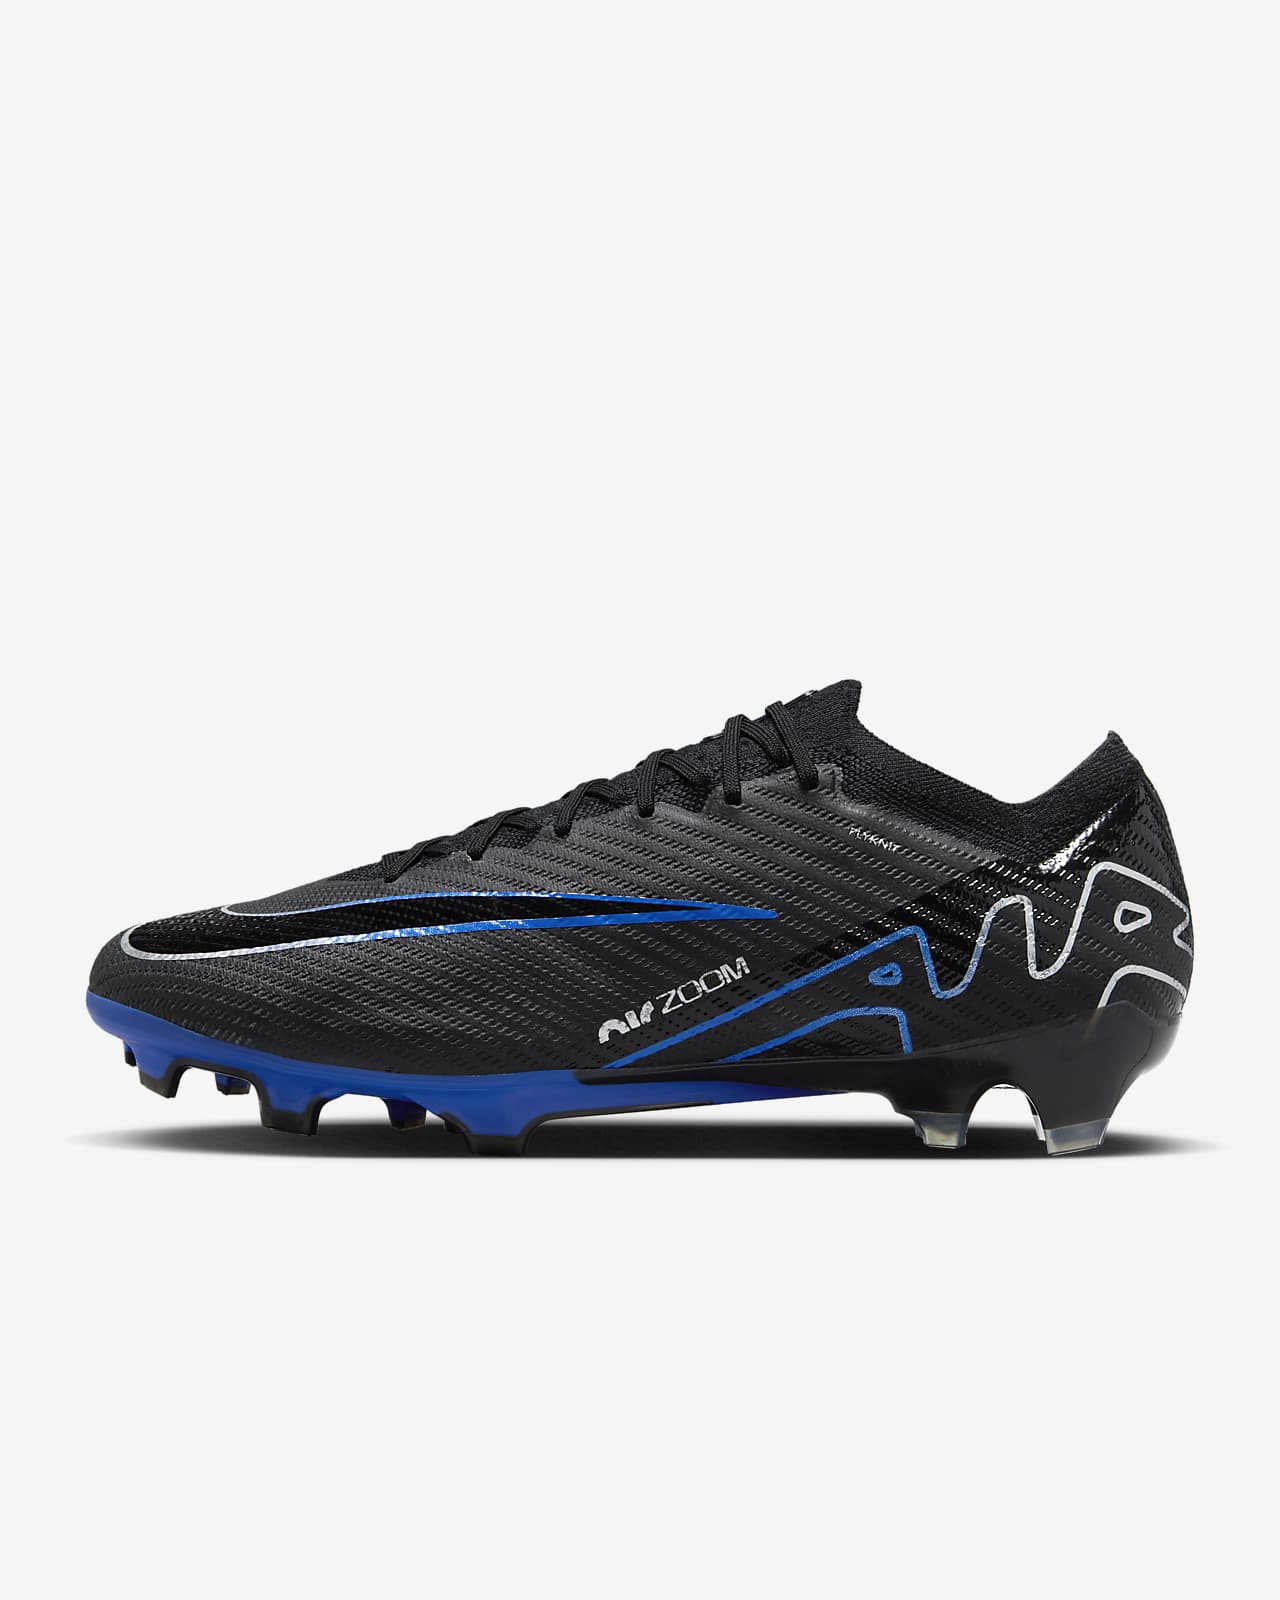 Ποδοσφαιρικά παπούτσια χαμηλού προφίλ για σκληρές επιφάνειες Nike Mercurial Vapor 15 Elite